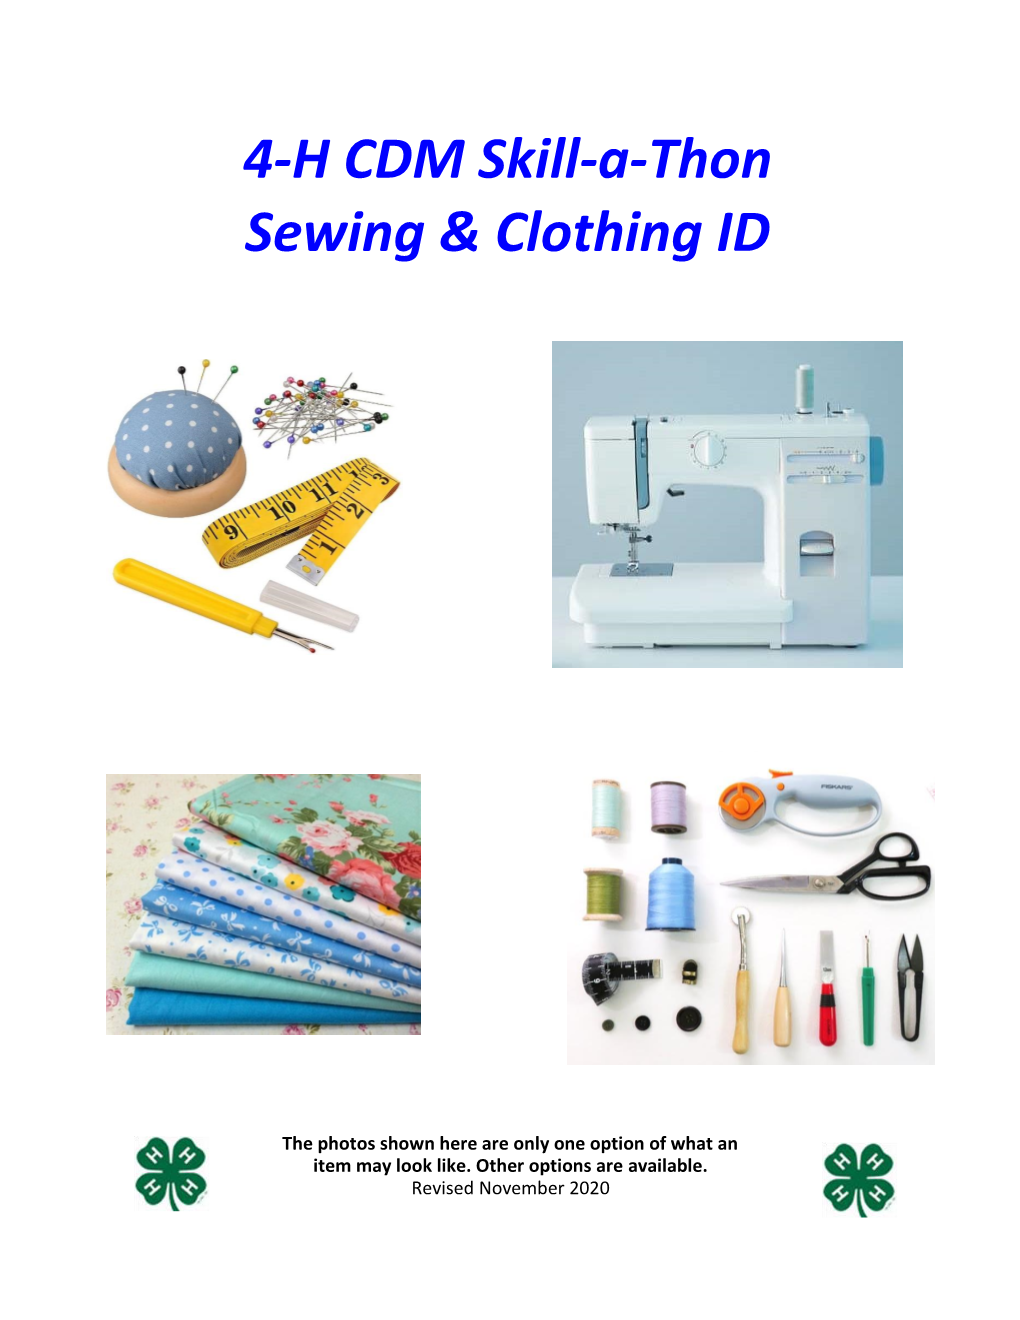 4-H CDM Skill-A-Thon Sewing & Clothing ID